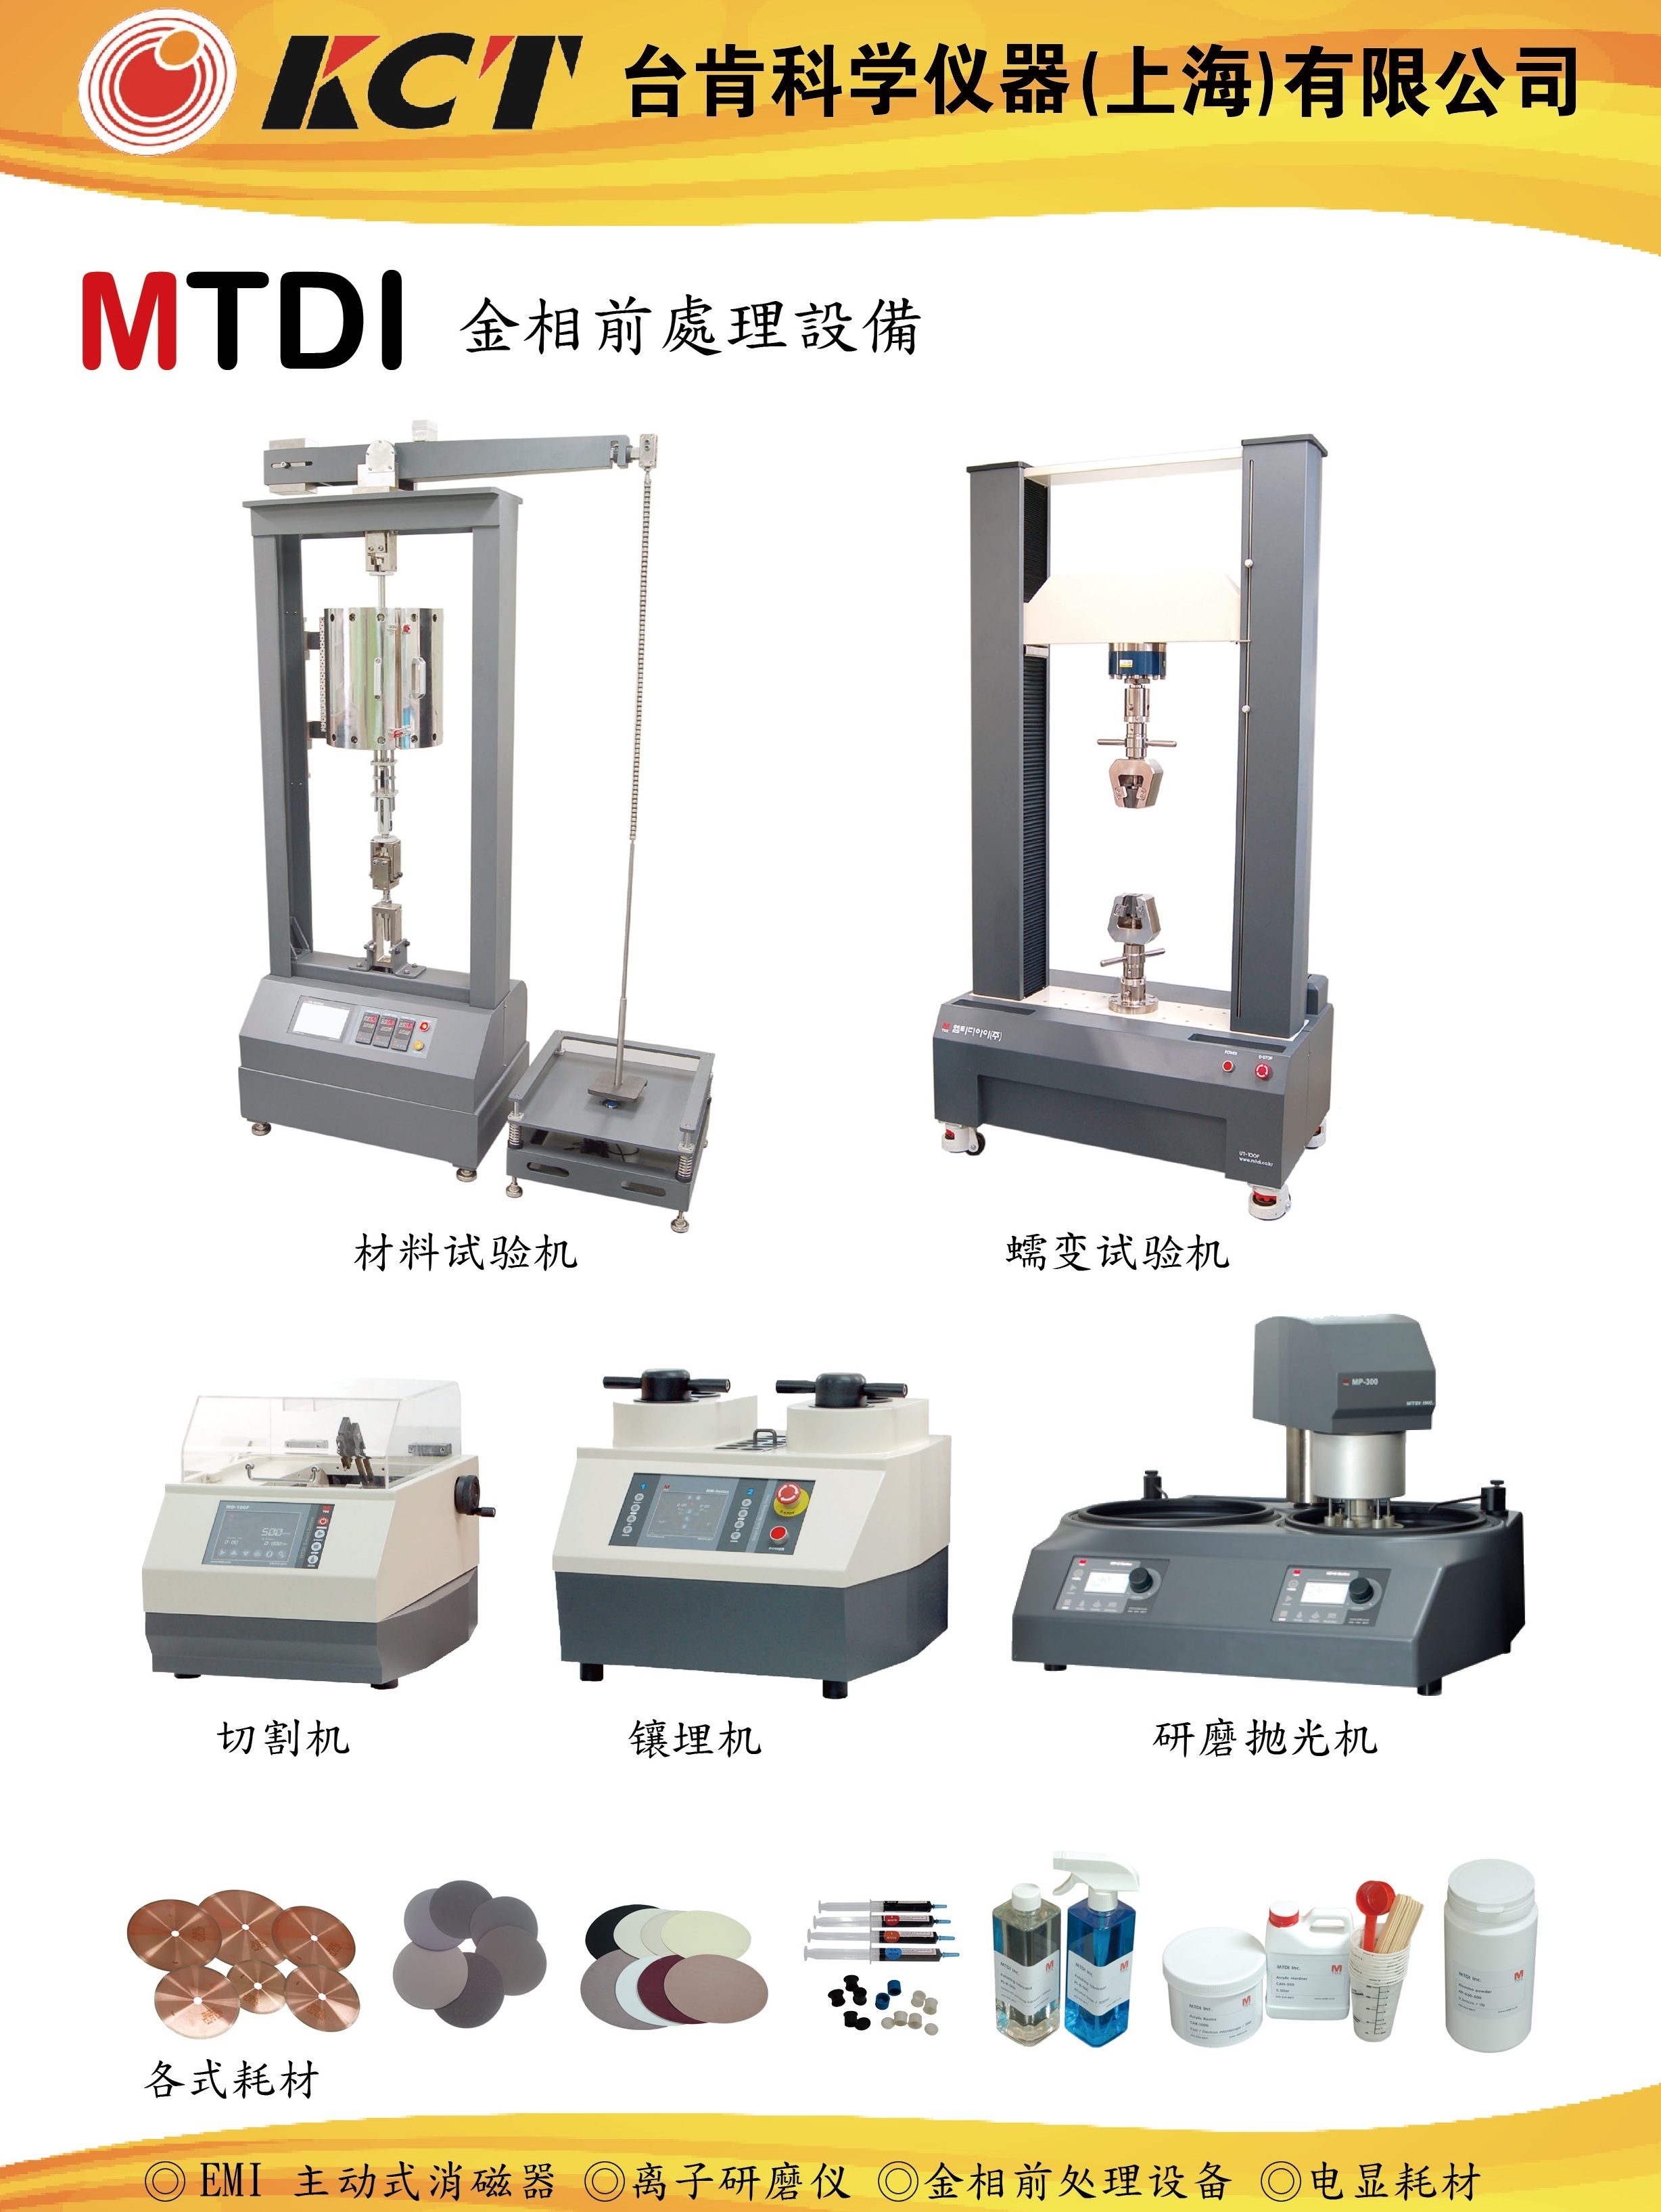 MTDI 大型样品变速手动/自动砂轮切割机